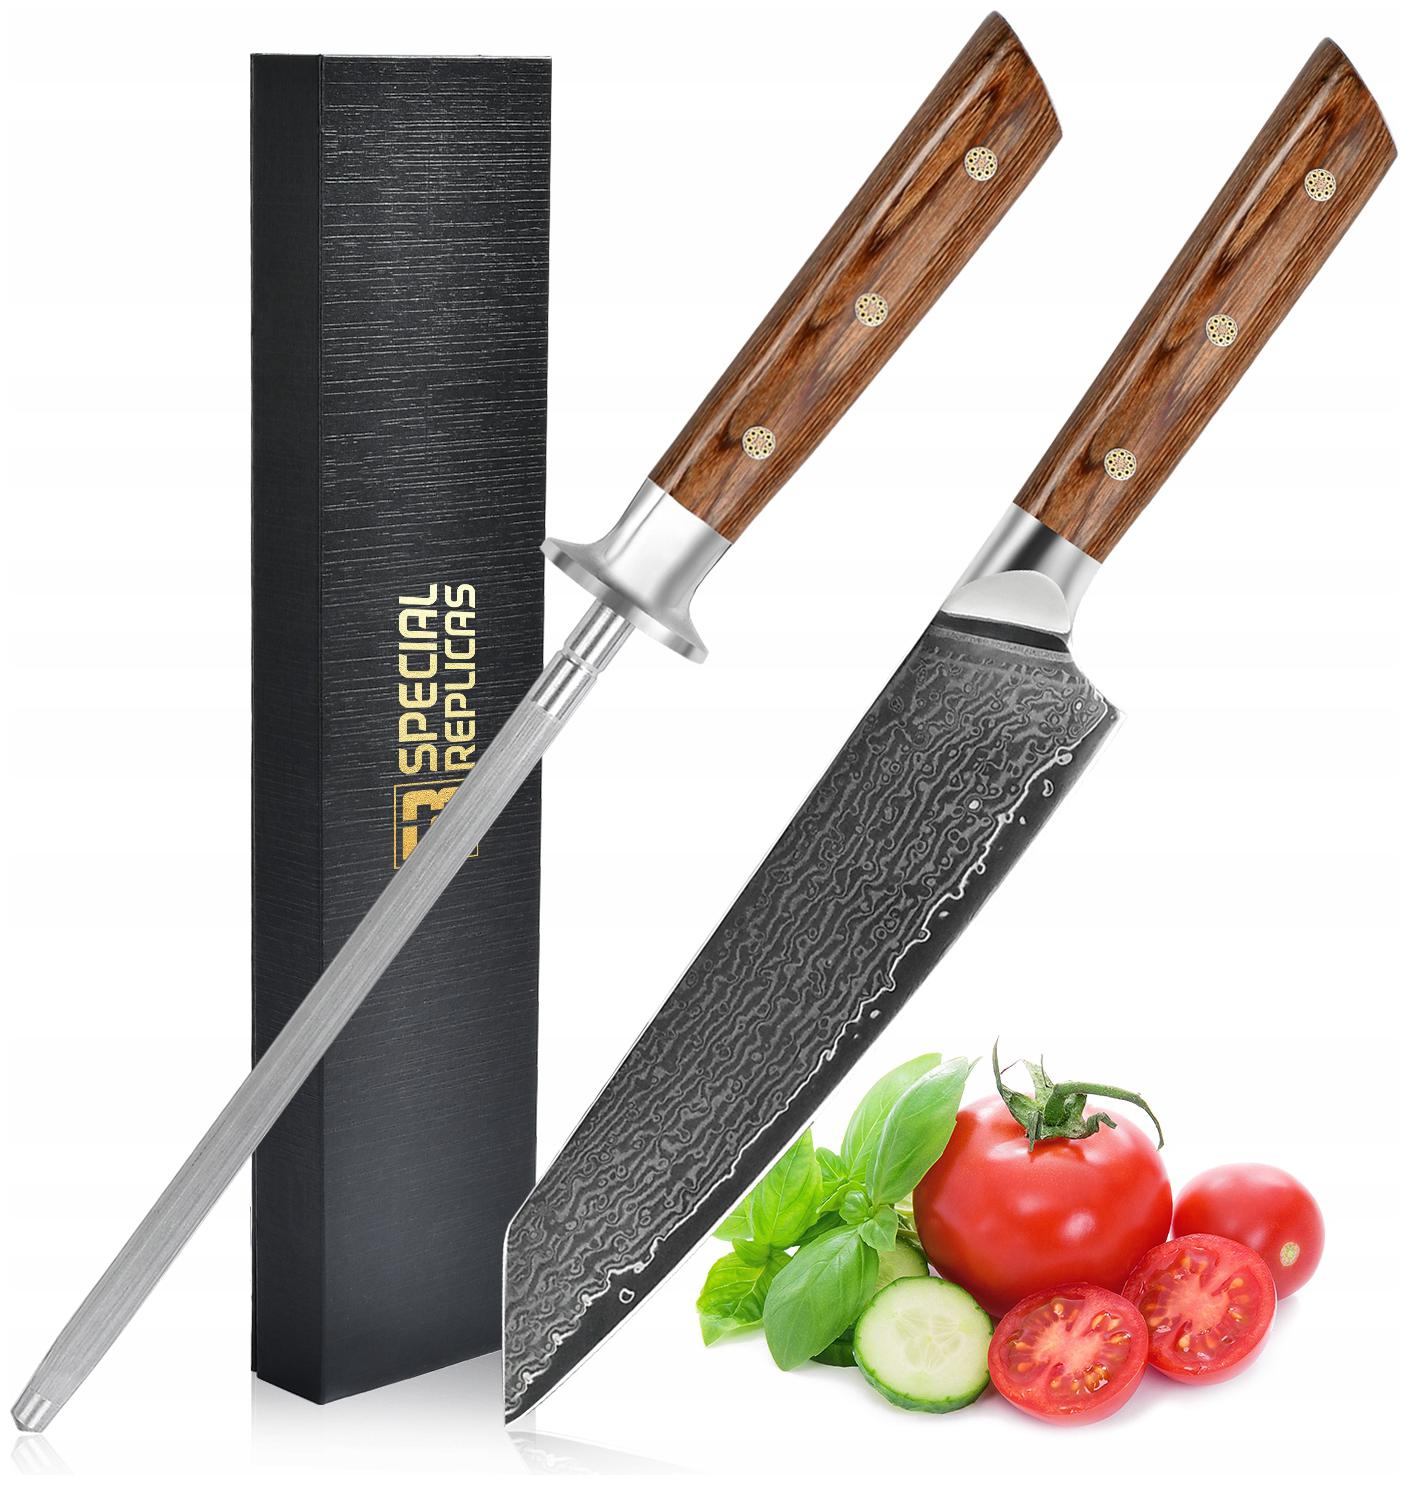 Profesjonell Kjøkkensjefkniv i Damaskusstål med Sliper Yd201-22